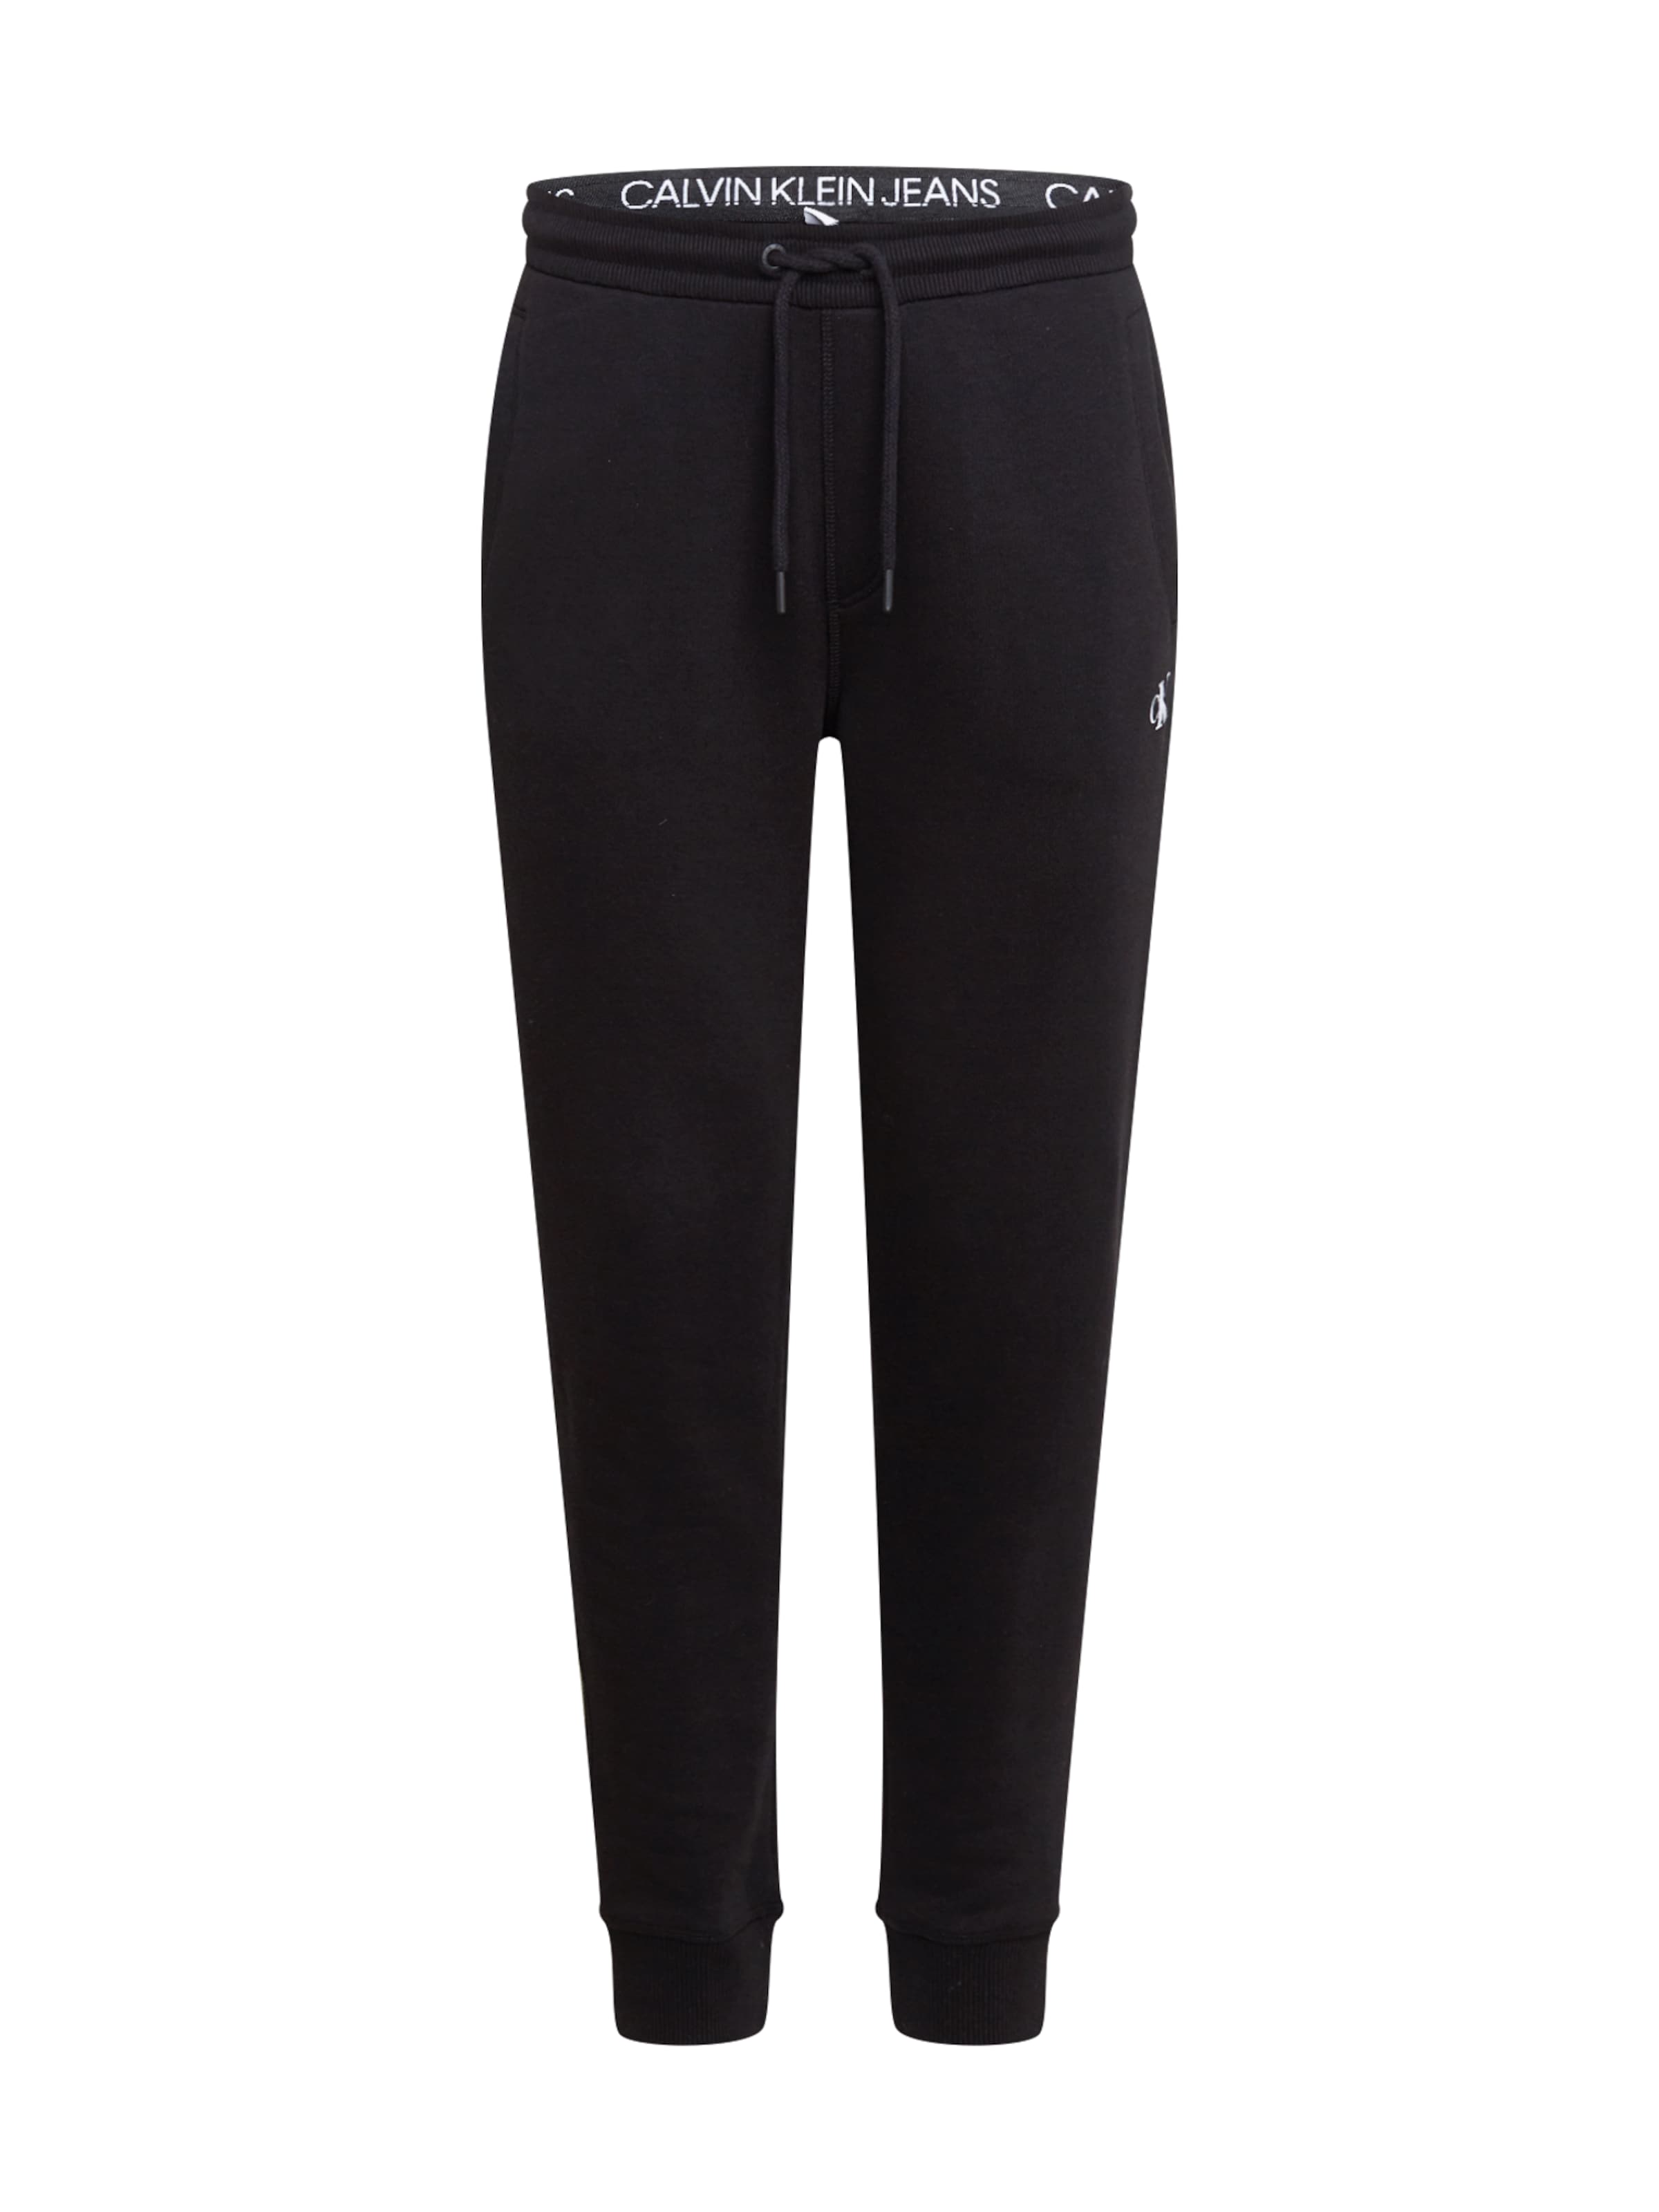 Men Pants | Calvin Klein Jeans Pants in Black - NF29078